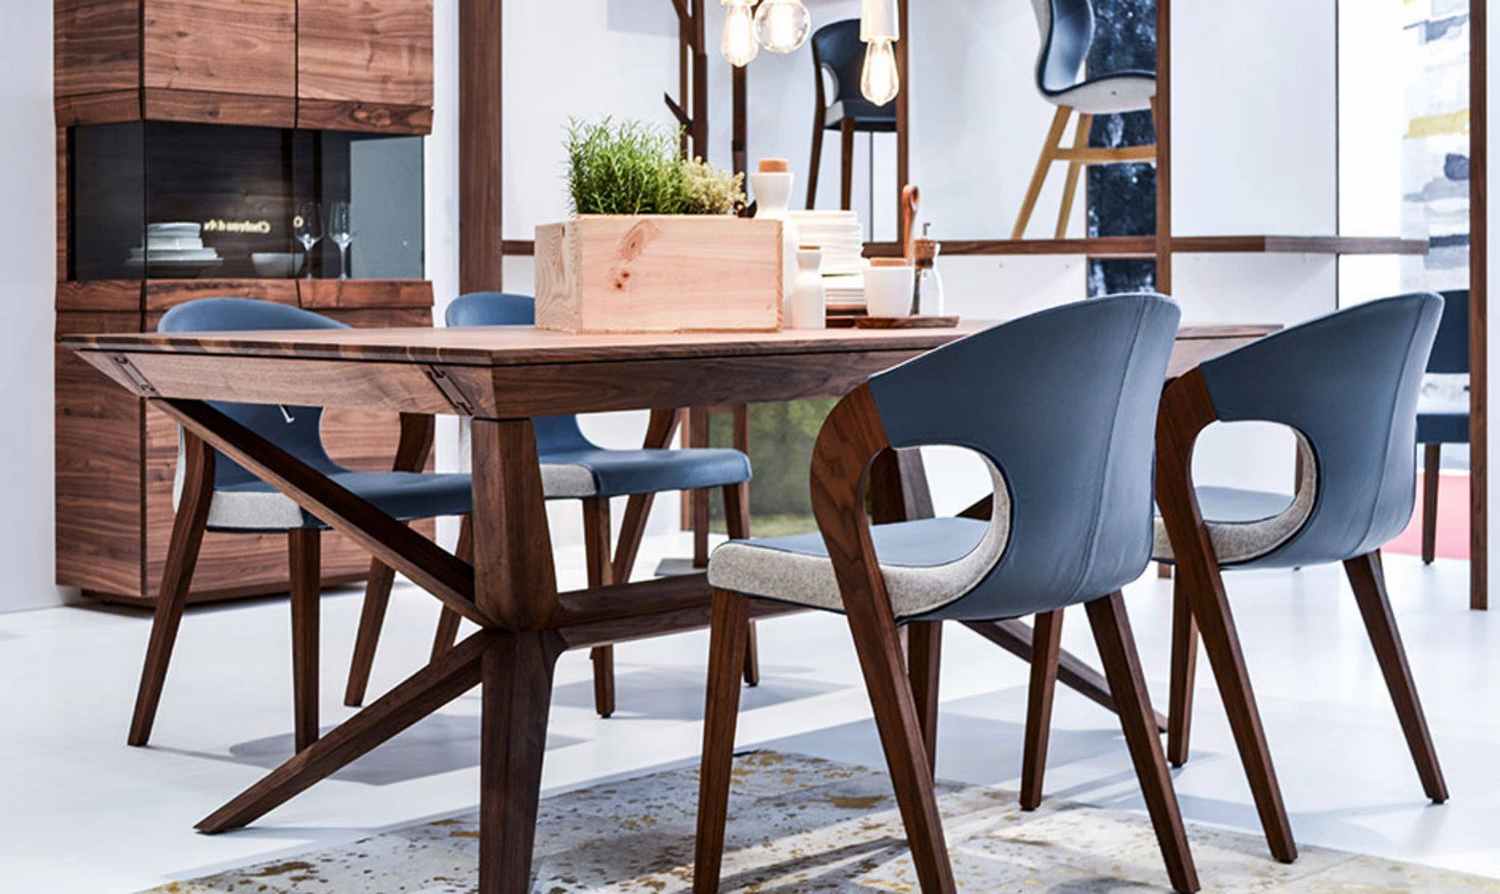 Table et chaises de repas en noyer design allemand contemporain